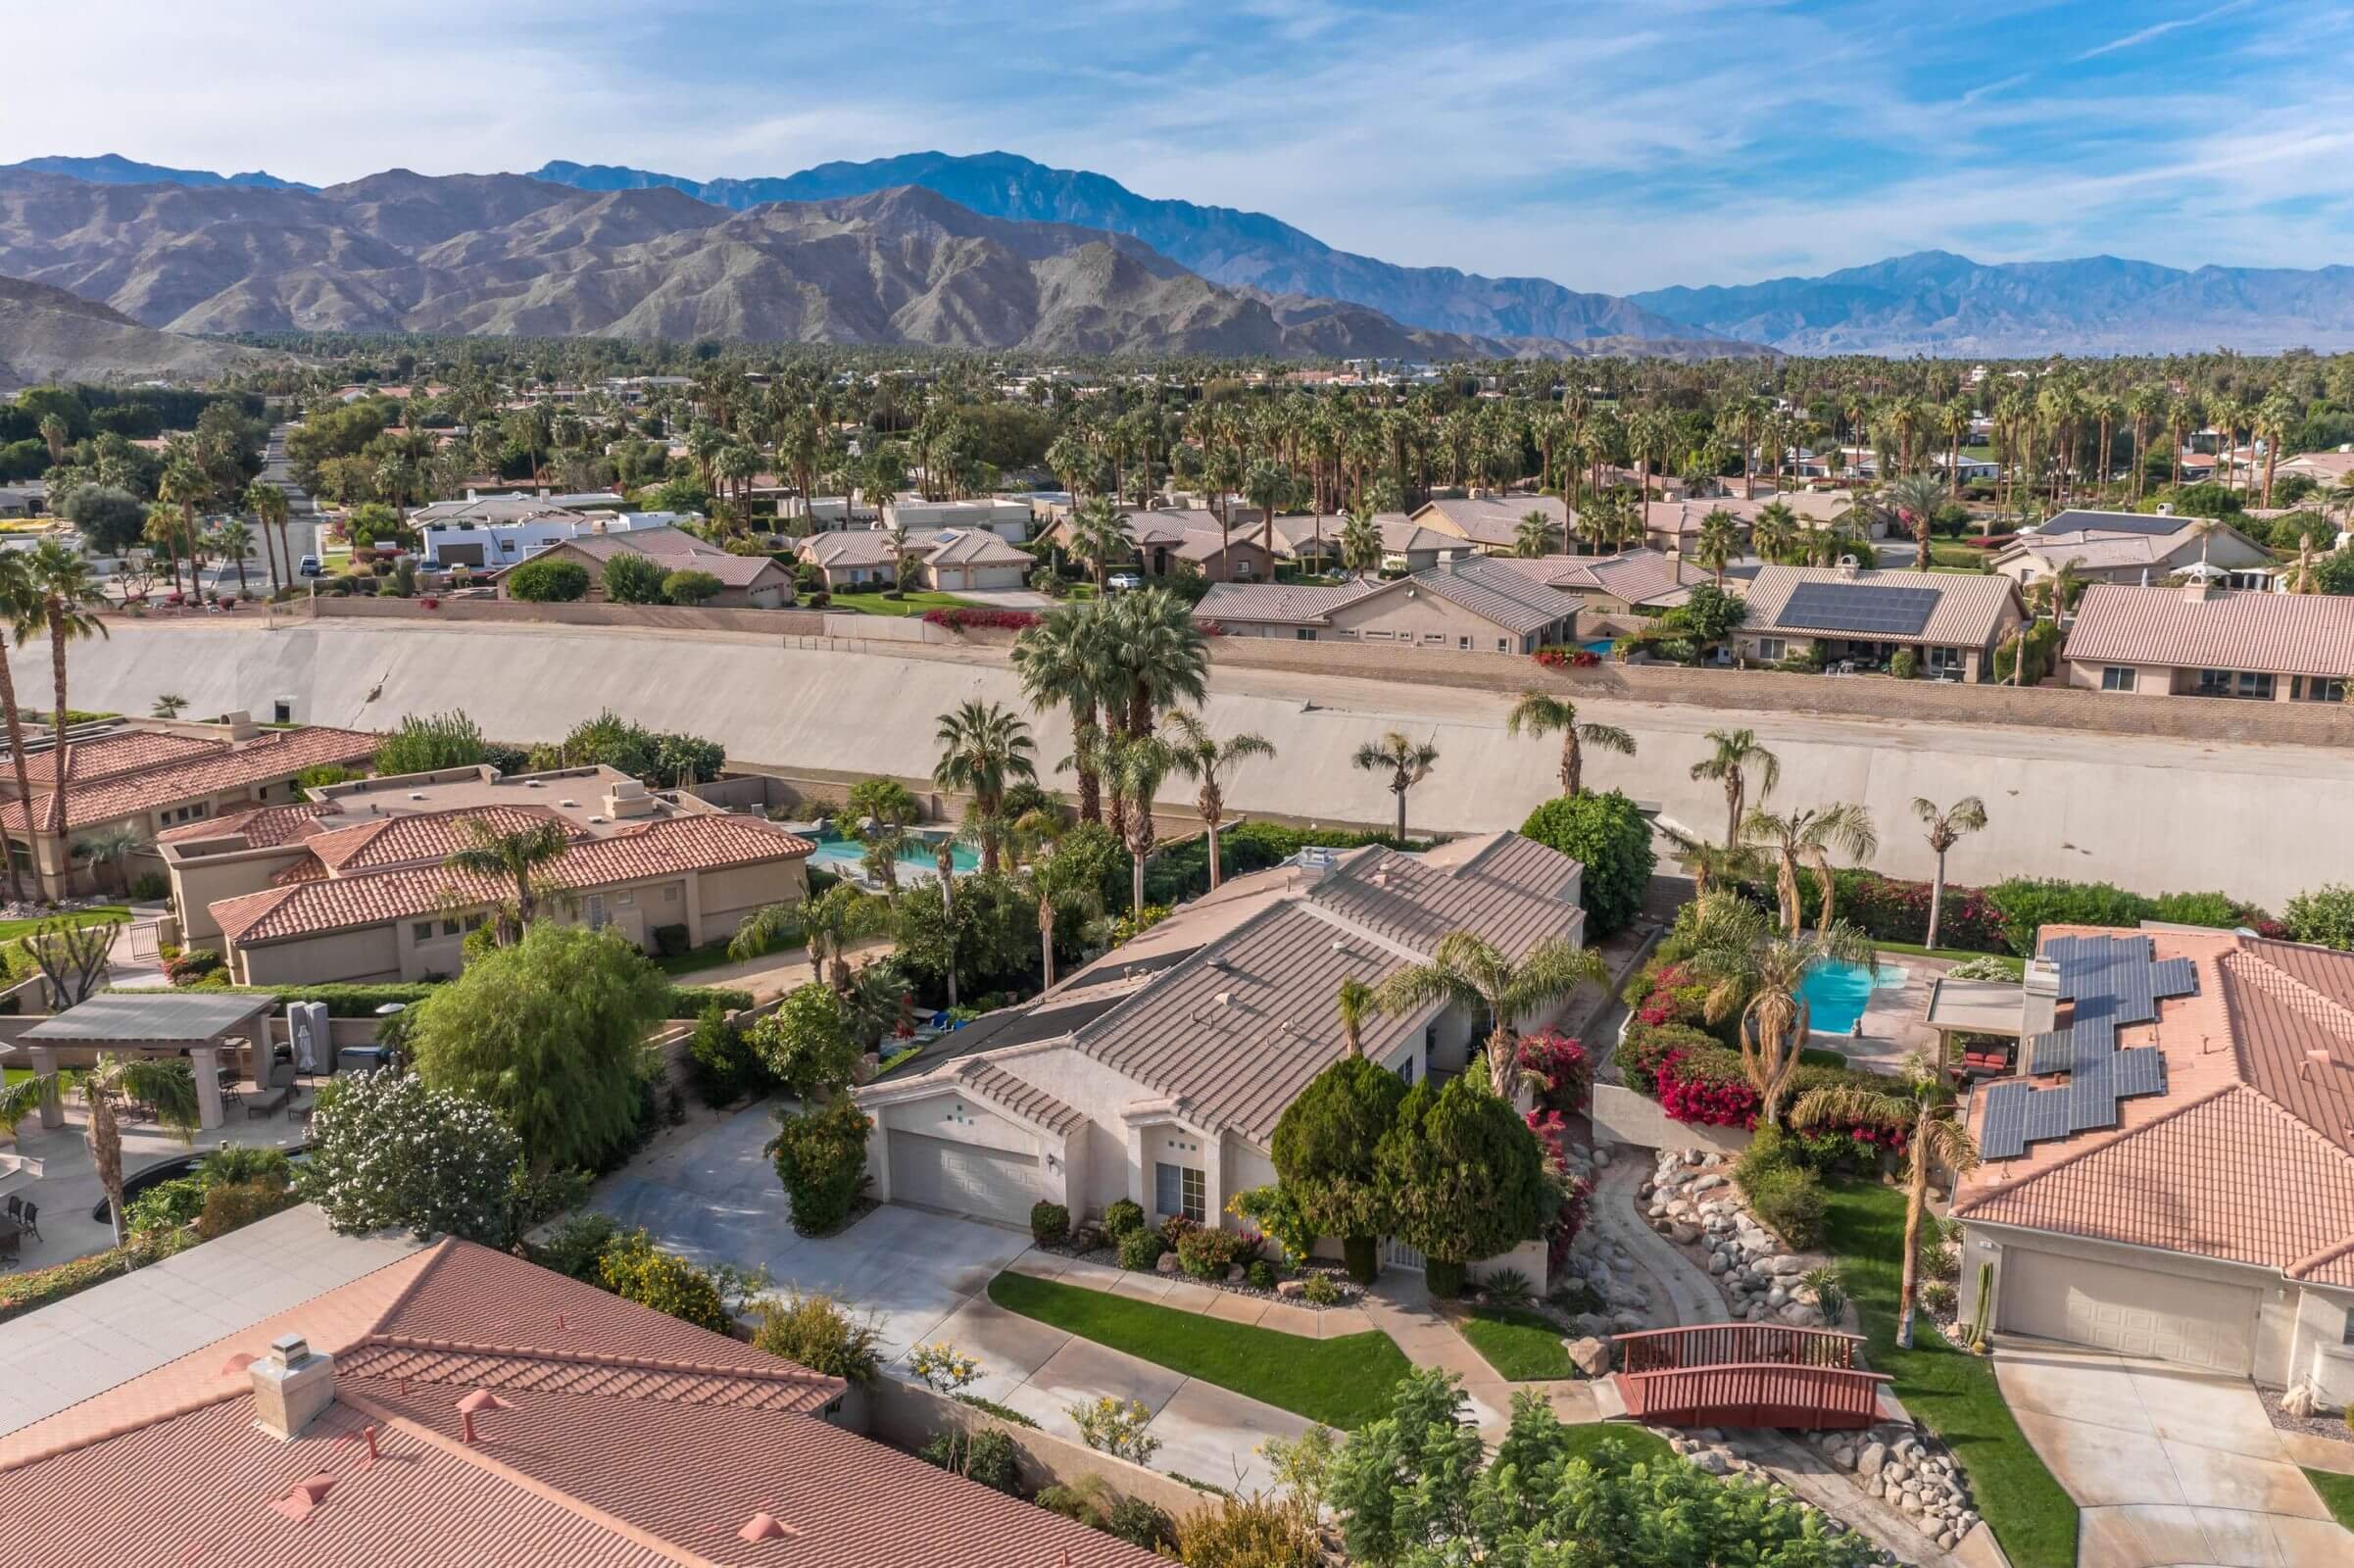 The Estates at Rancho Mirage Rancho Mirage 92270